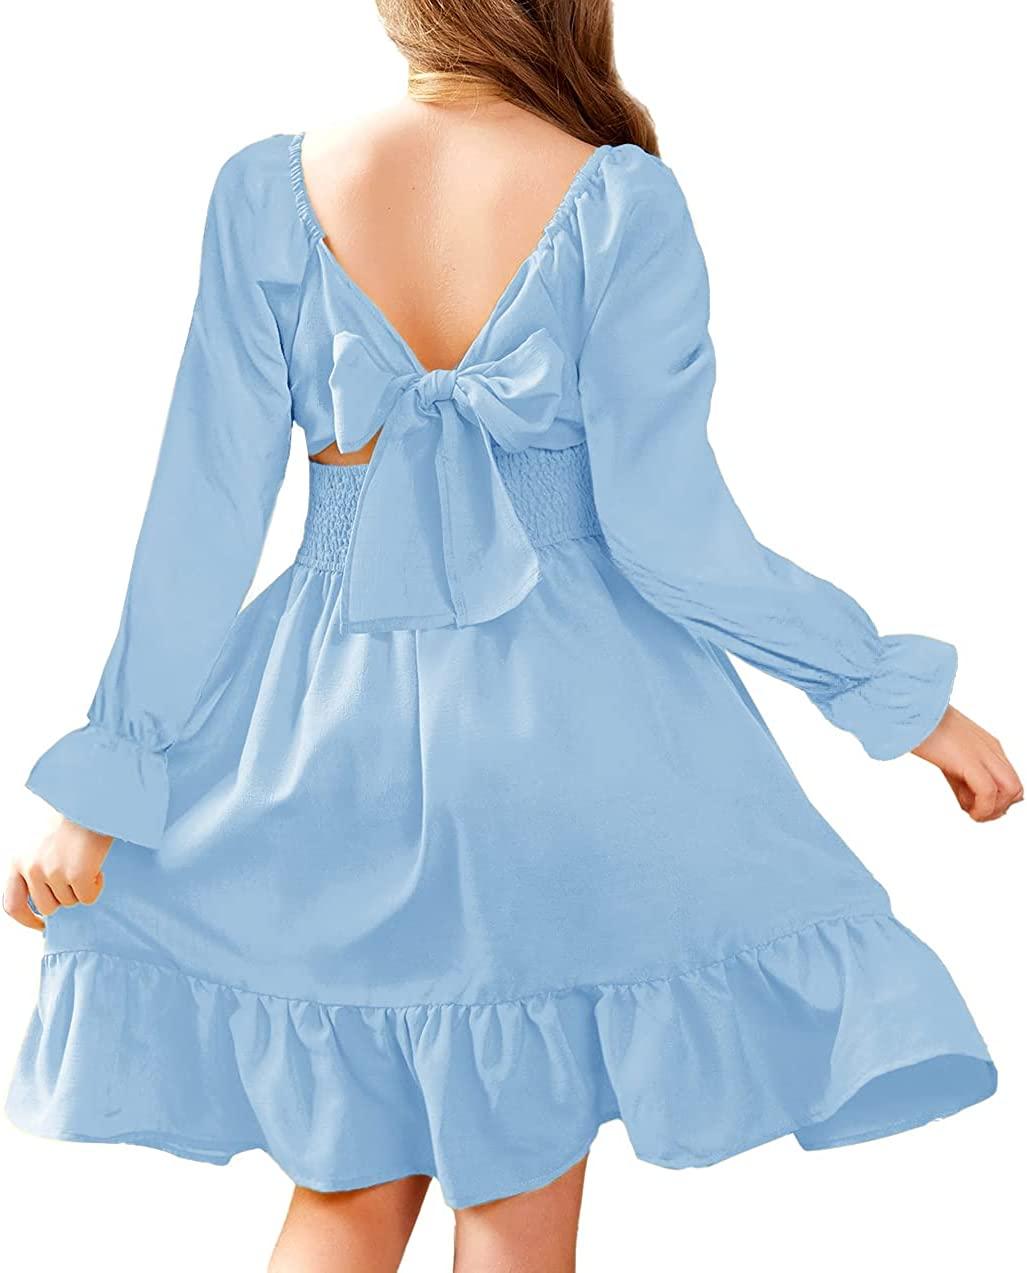 10-11 Years Ls-clear Blue Повсякденні елегантні сукні Arshiner для дівчаток із зав’язкою, короткими рукавами та рюшами, відкритими